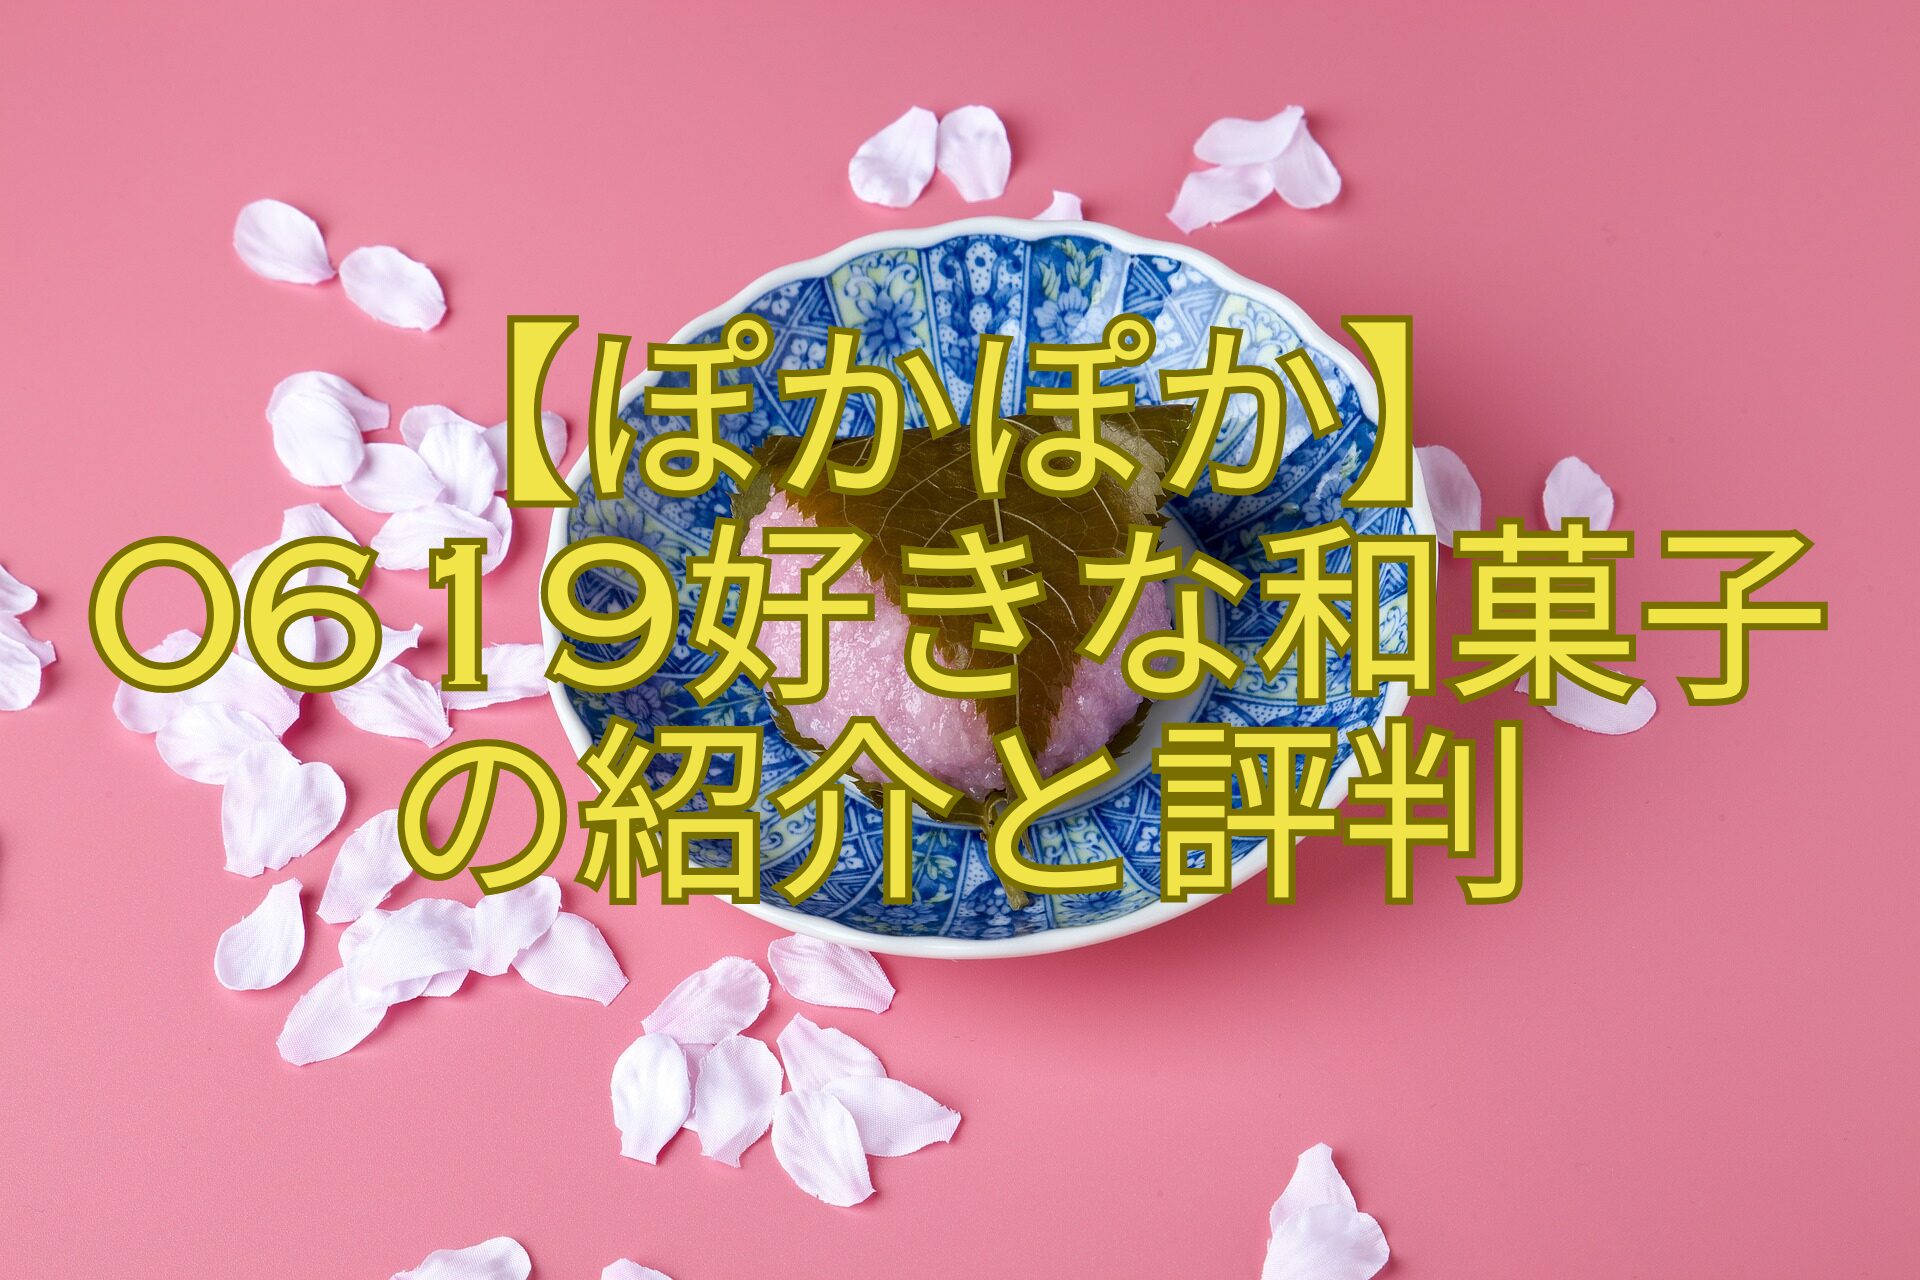 【ぽかぽか】-0619好きな和菓子-の紹介と評判